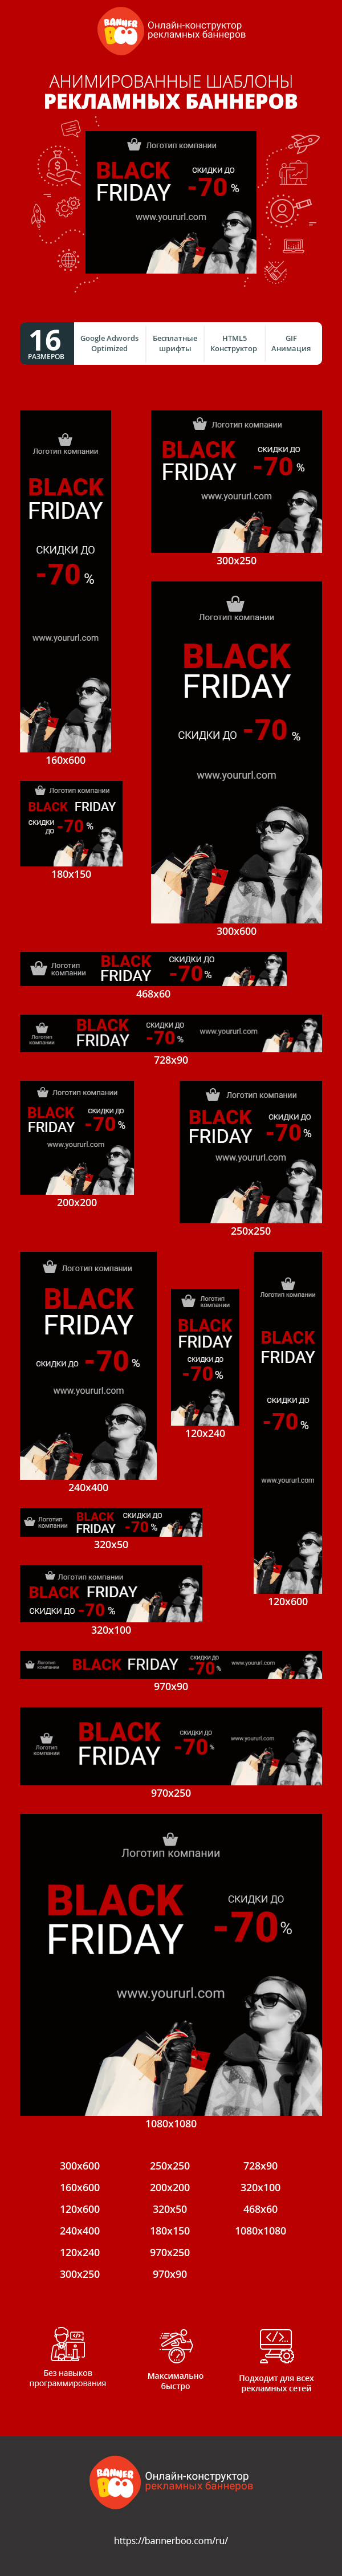 Шаблон рекламного баннера — Black friday — скидки до -70%